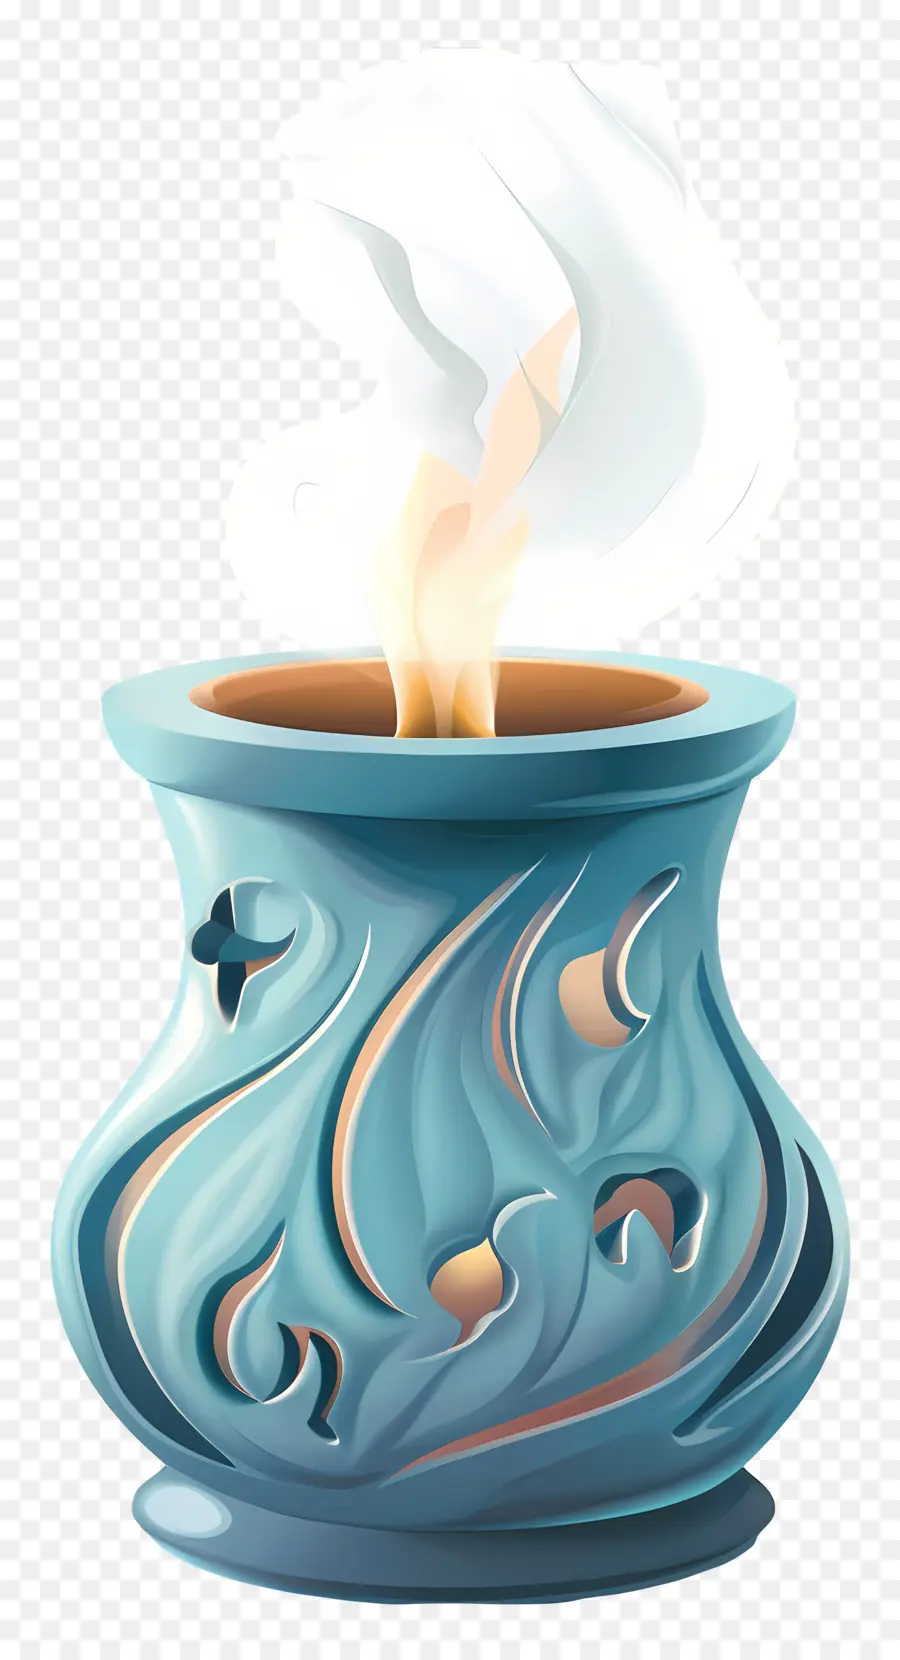 aroma burner blue ceramic pot ornate design scroll work floral motifs